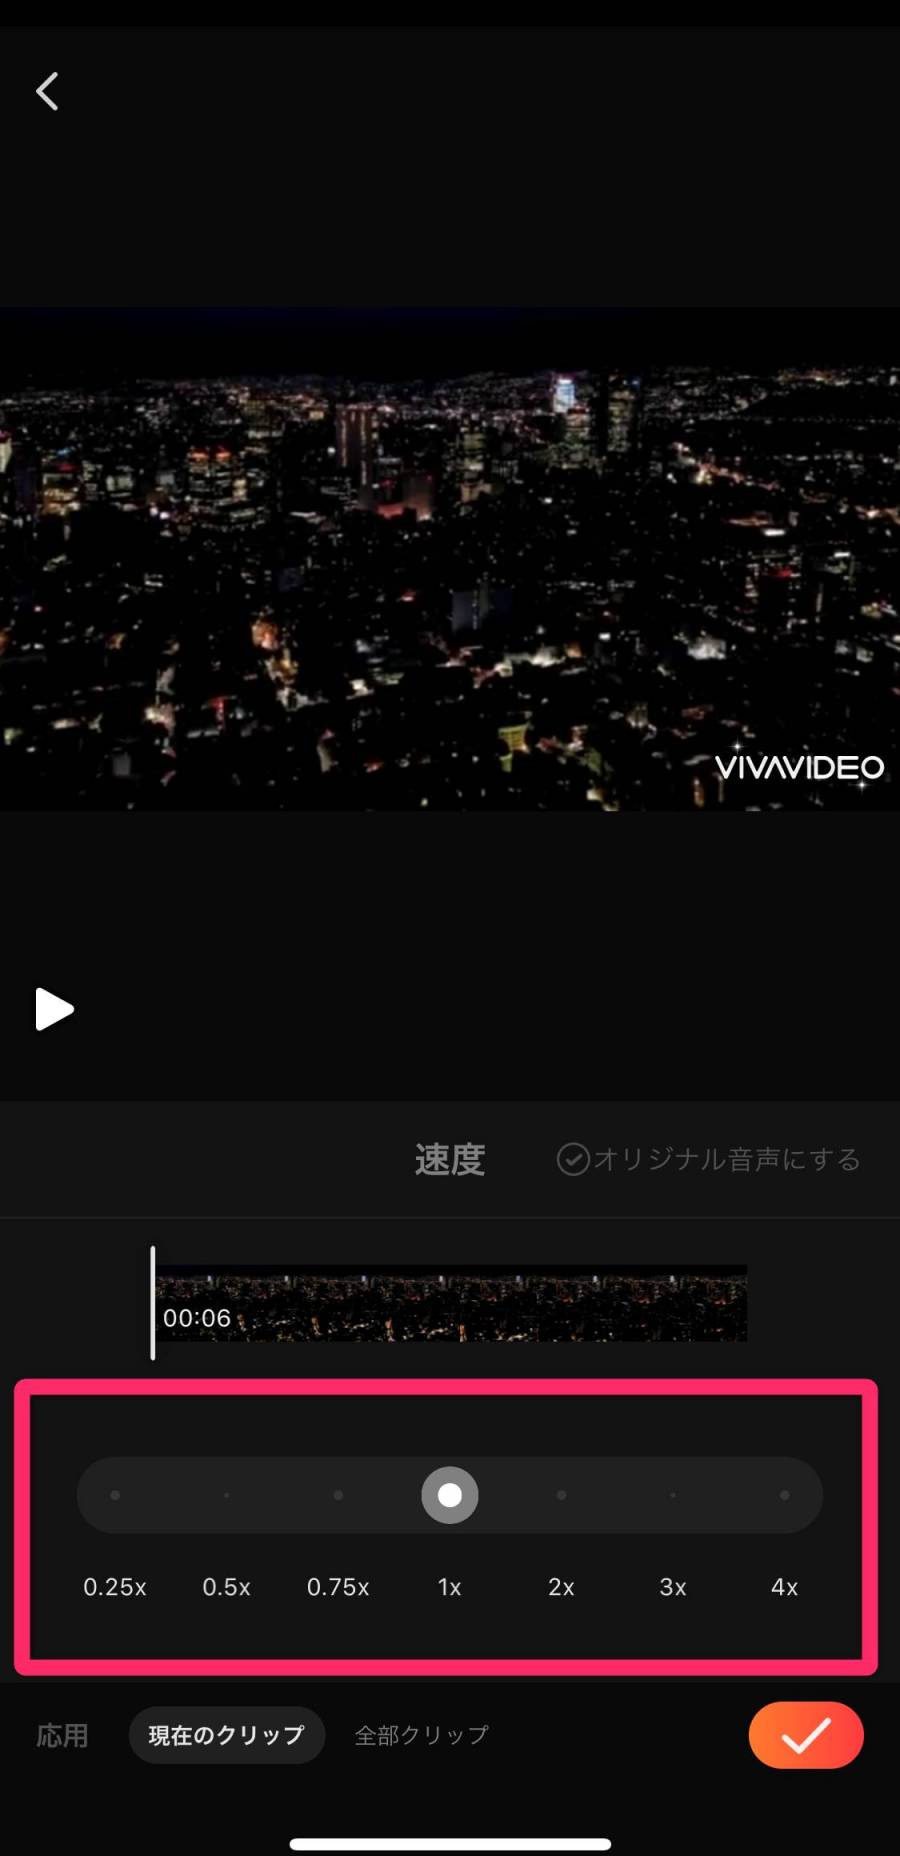 VivaVideo 再生速度